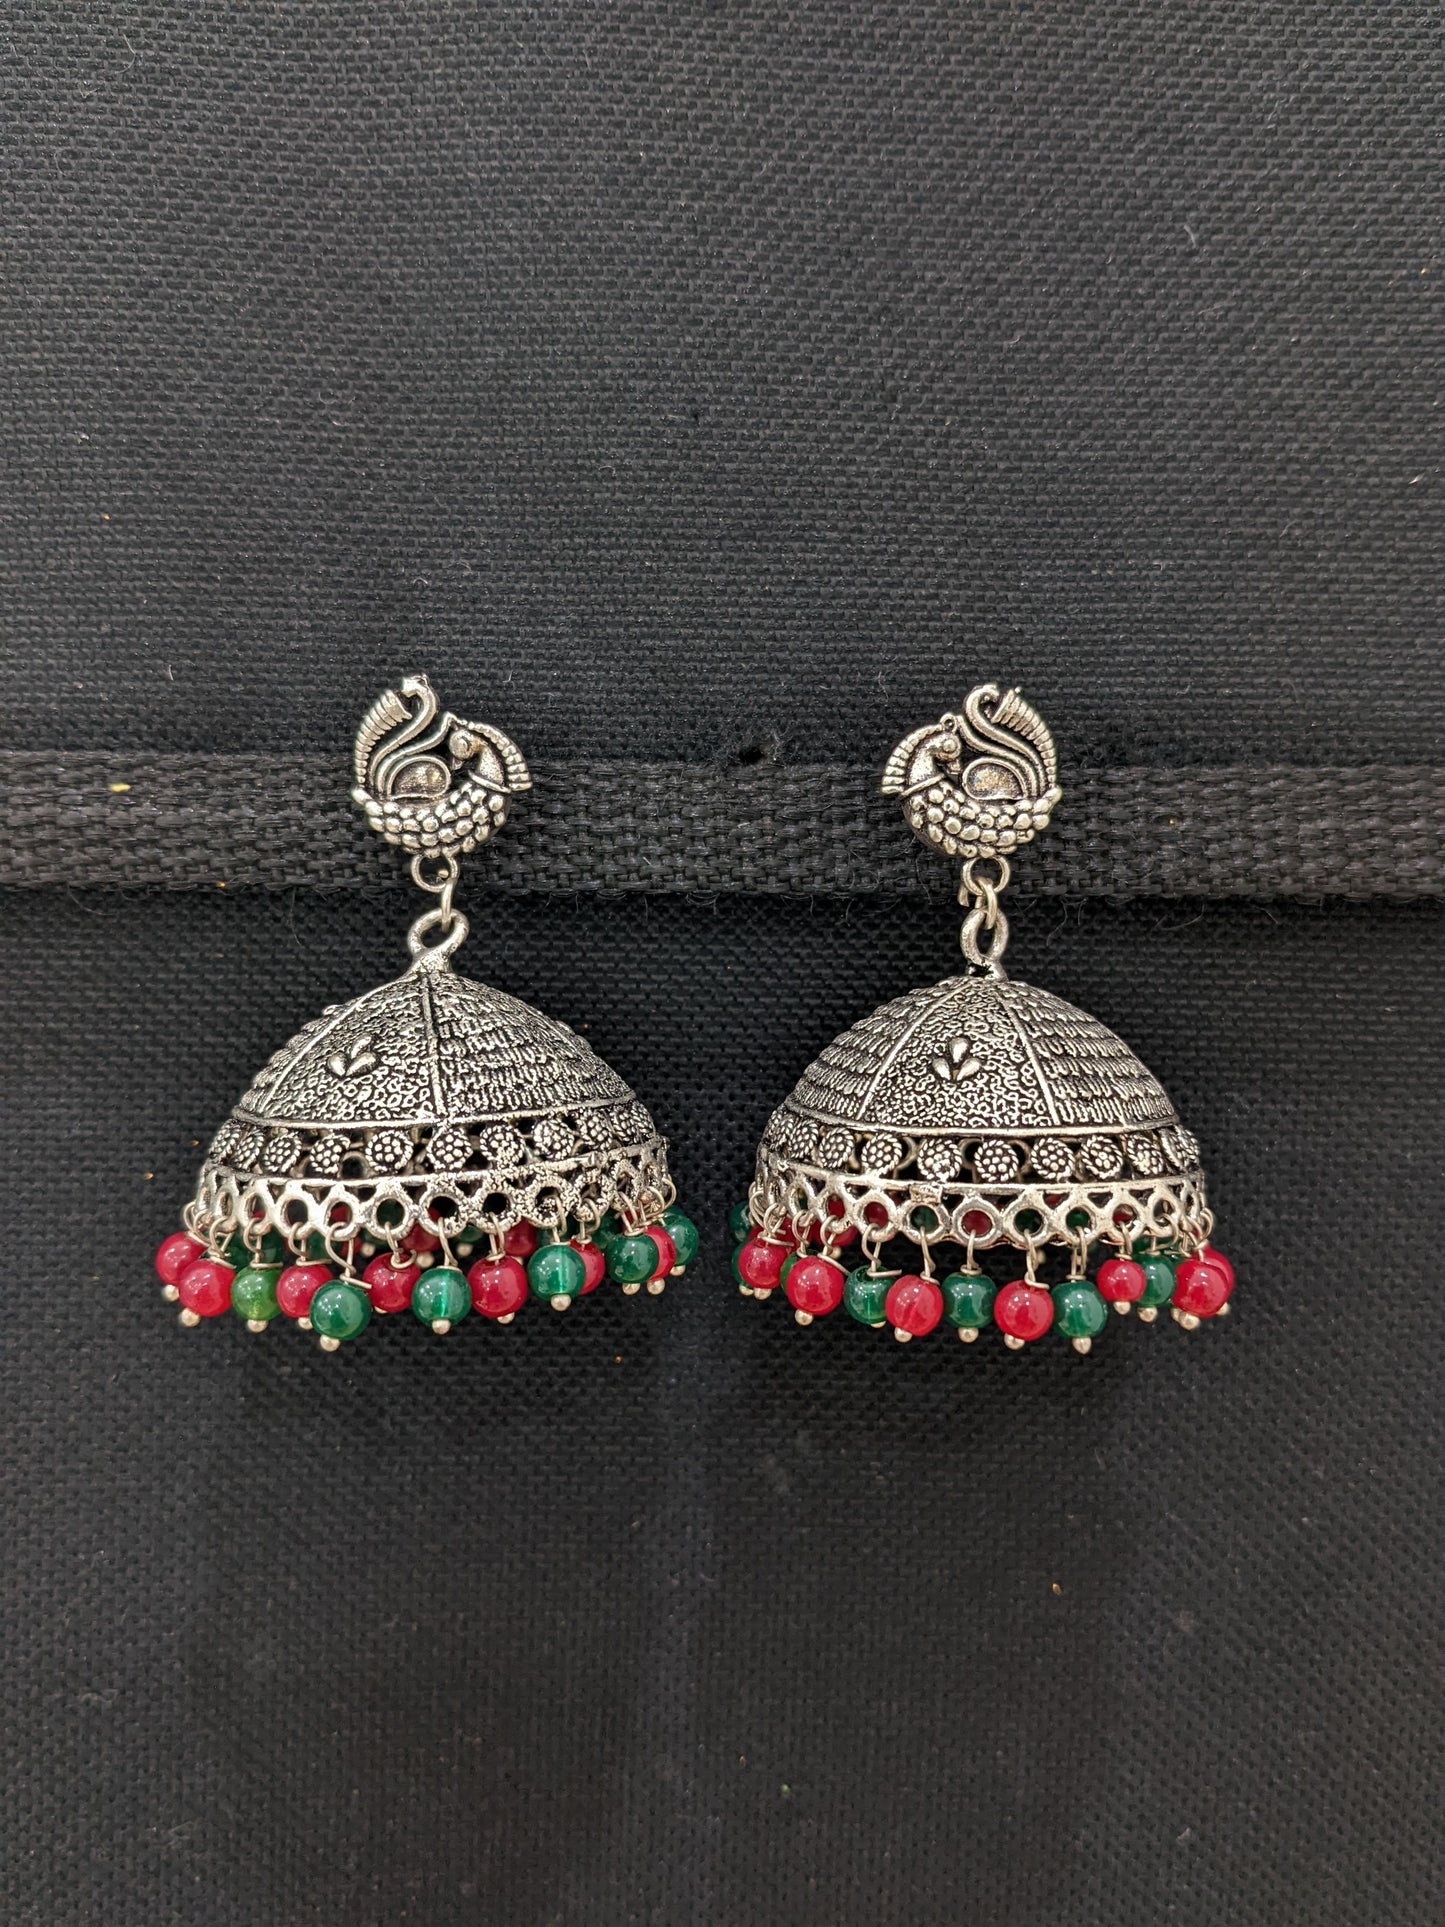 XXL size oxidized silver jhumka earrings